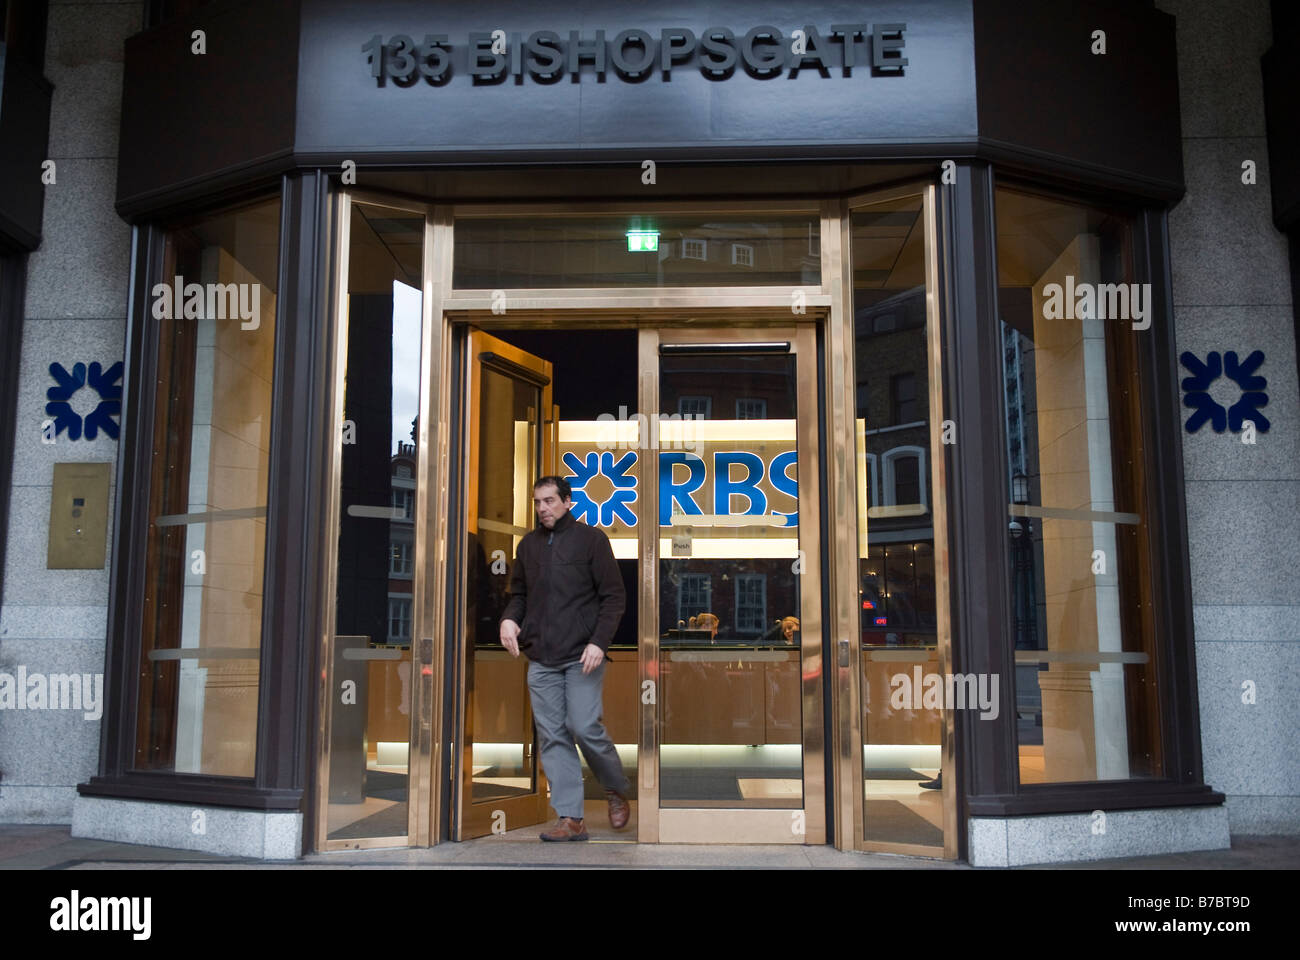 RBS sign at the entrance of Royal bank of Scotland building, Bishopsgate, London Stock Photo